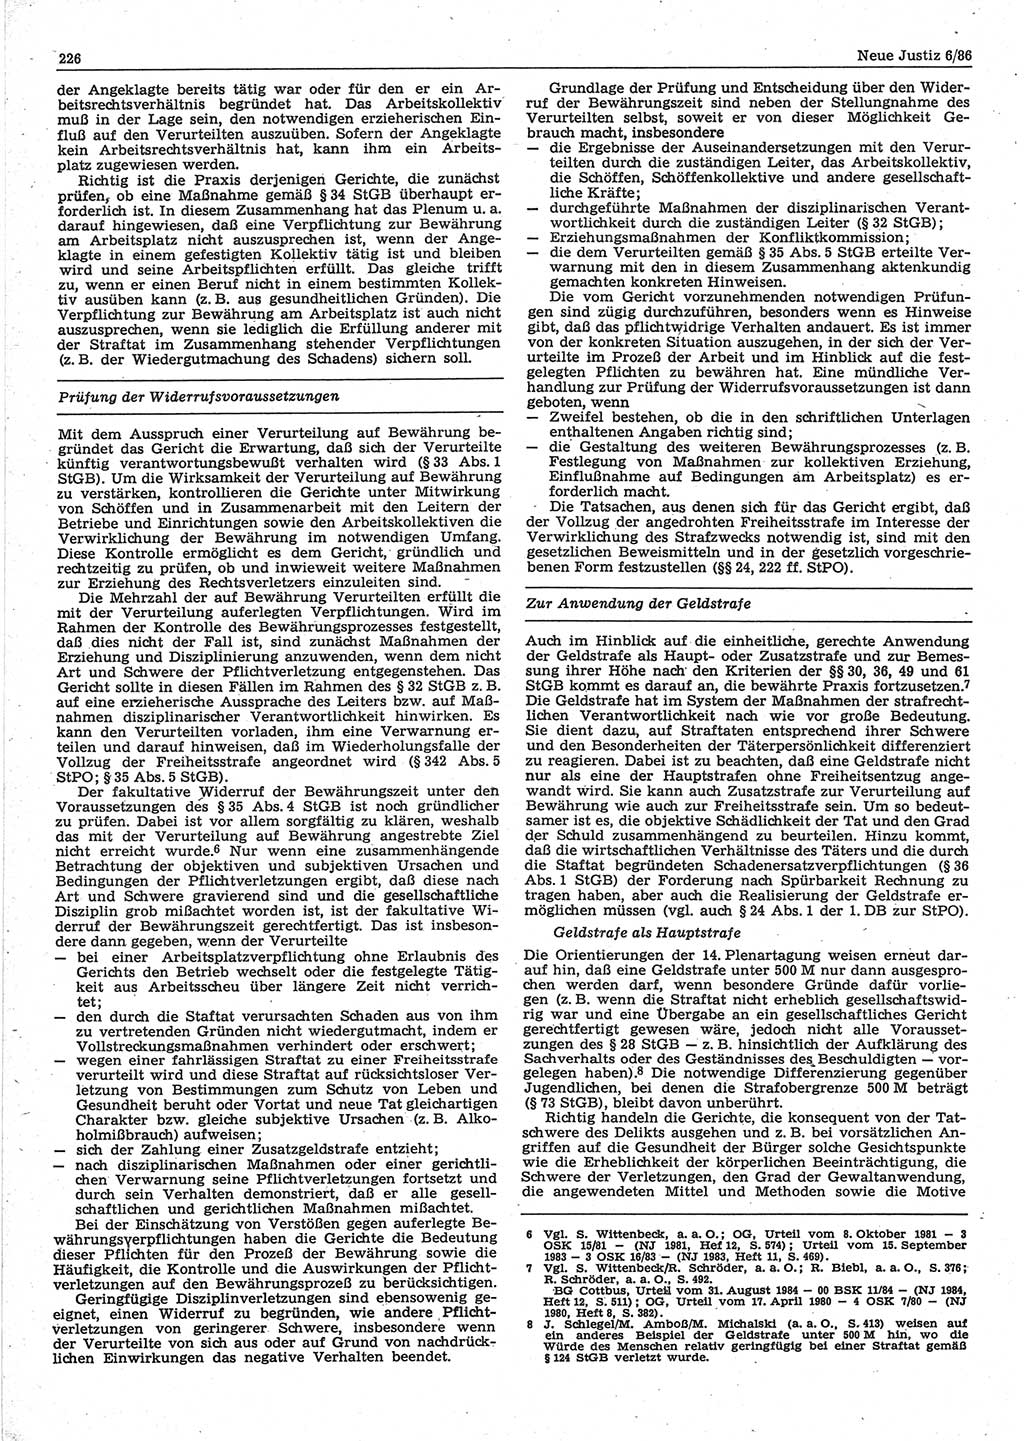 Neue Justiz (NJ), Zeitschrift für sozialistisches Recht und Gesetzlichkeit [Deutsche Demokratische Republik (DDR)], 40. Jahrgang 1986, Seite 226 (NJ DDR 1986, S. 226)